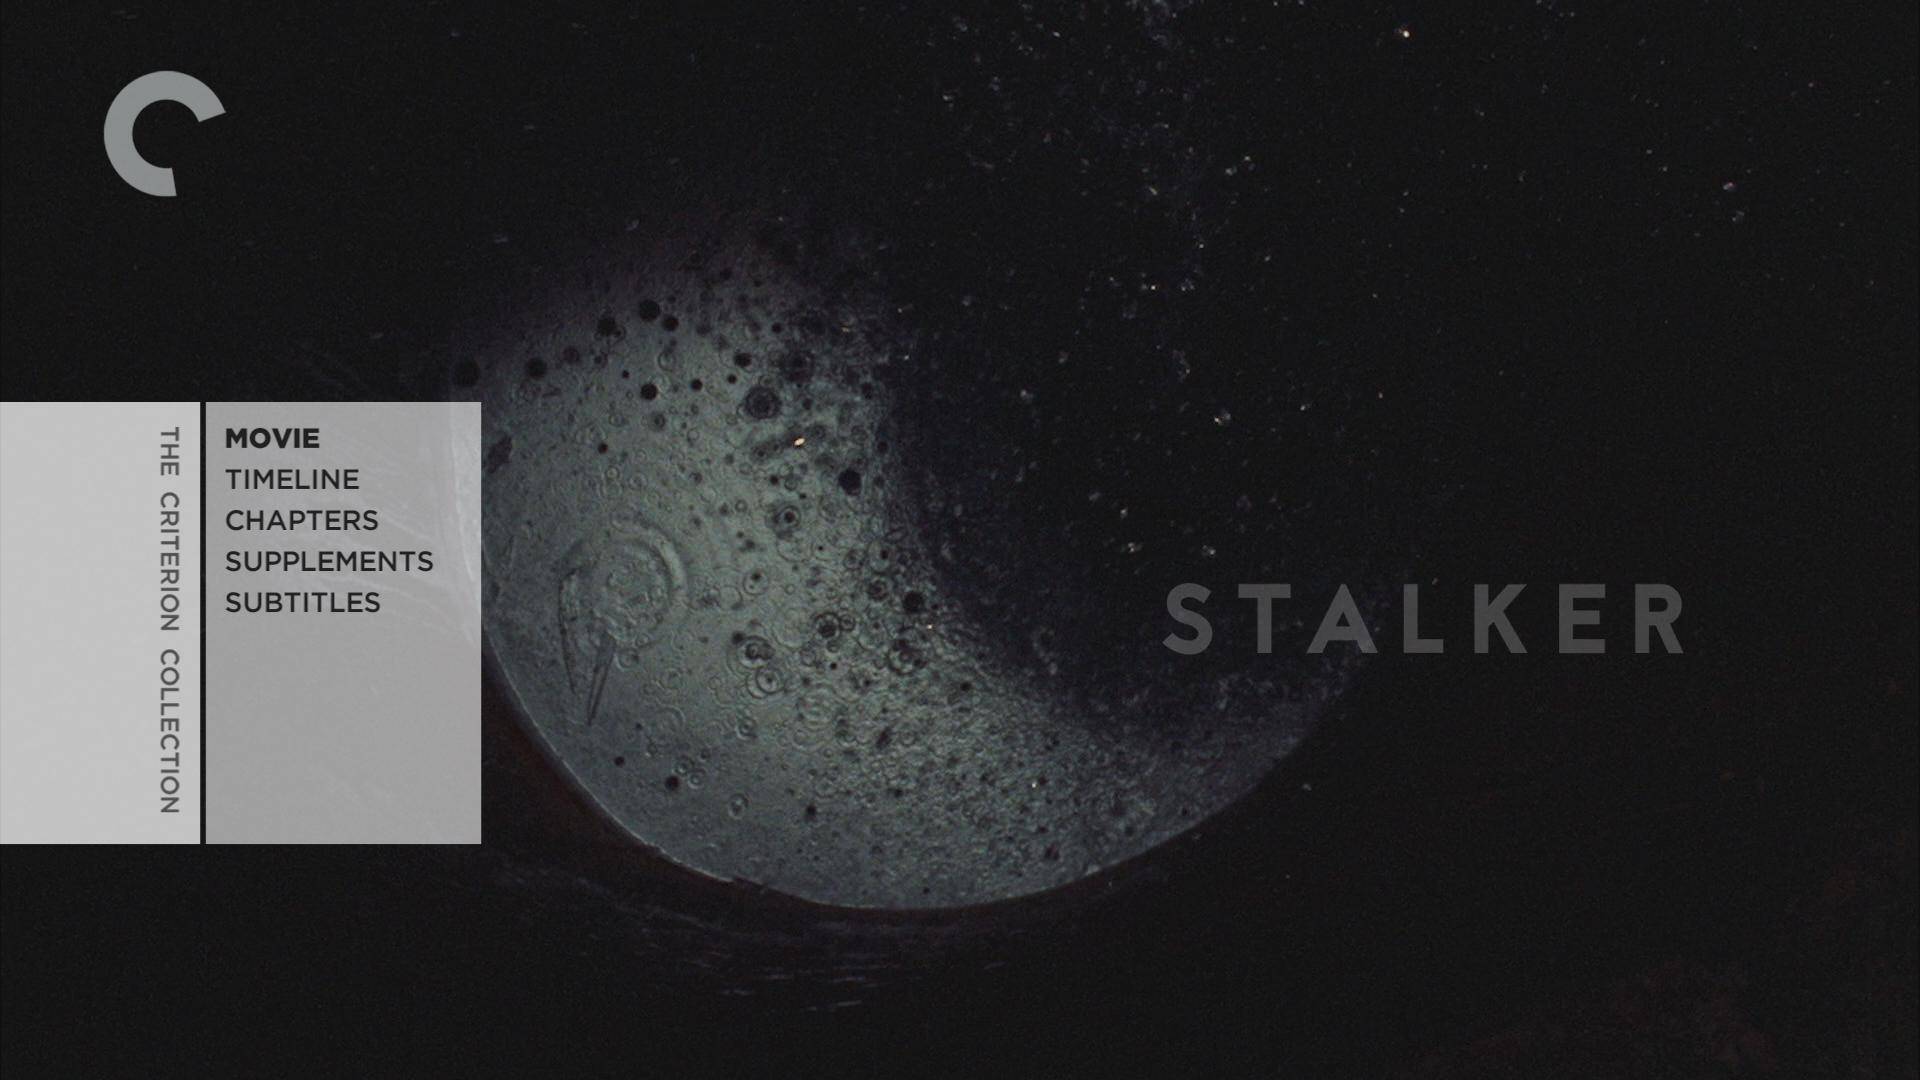 Stalker / Сталкер (1979)